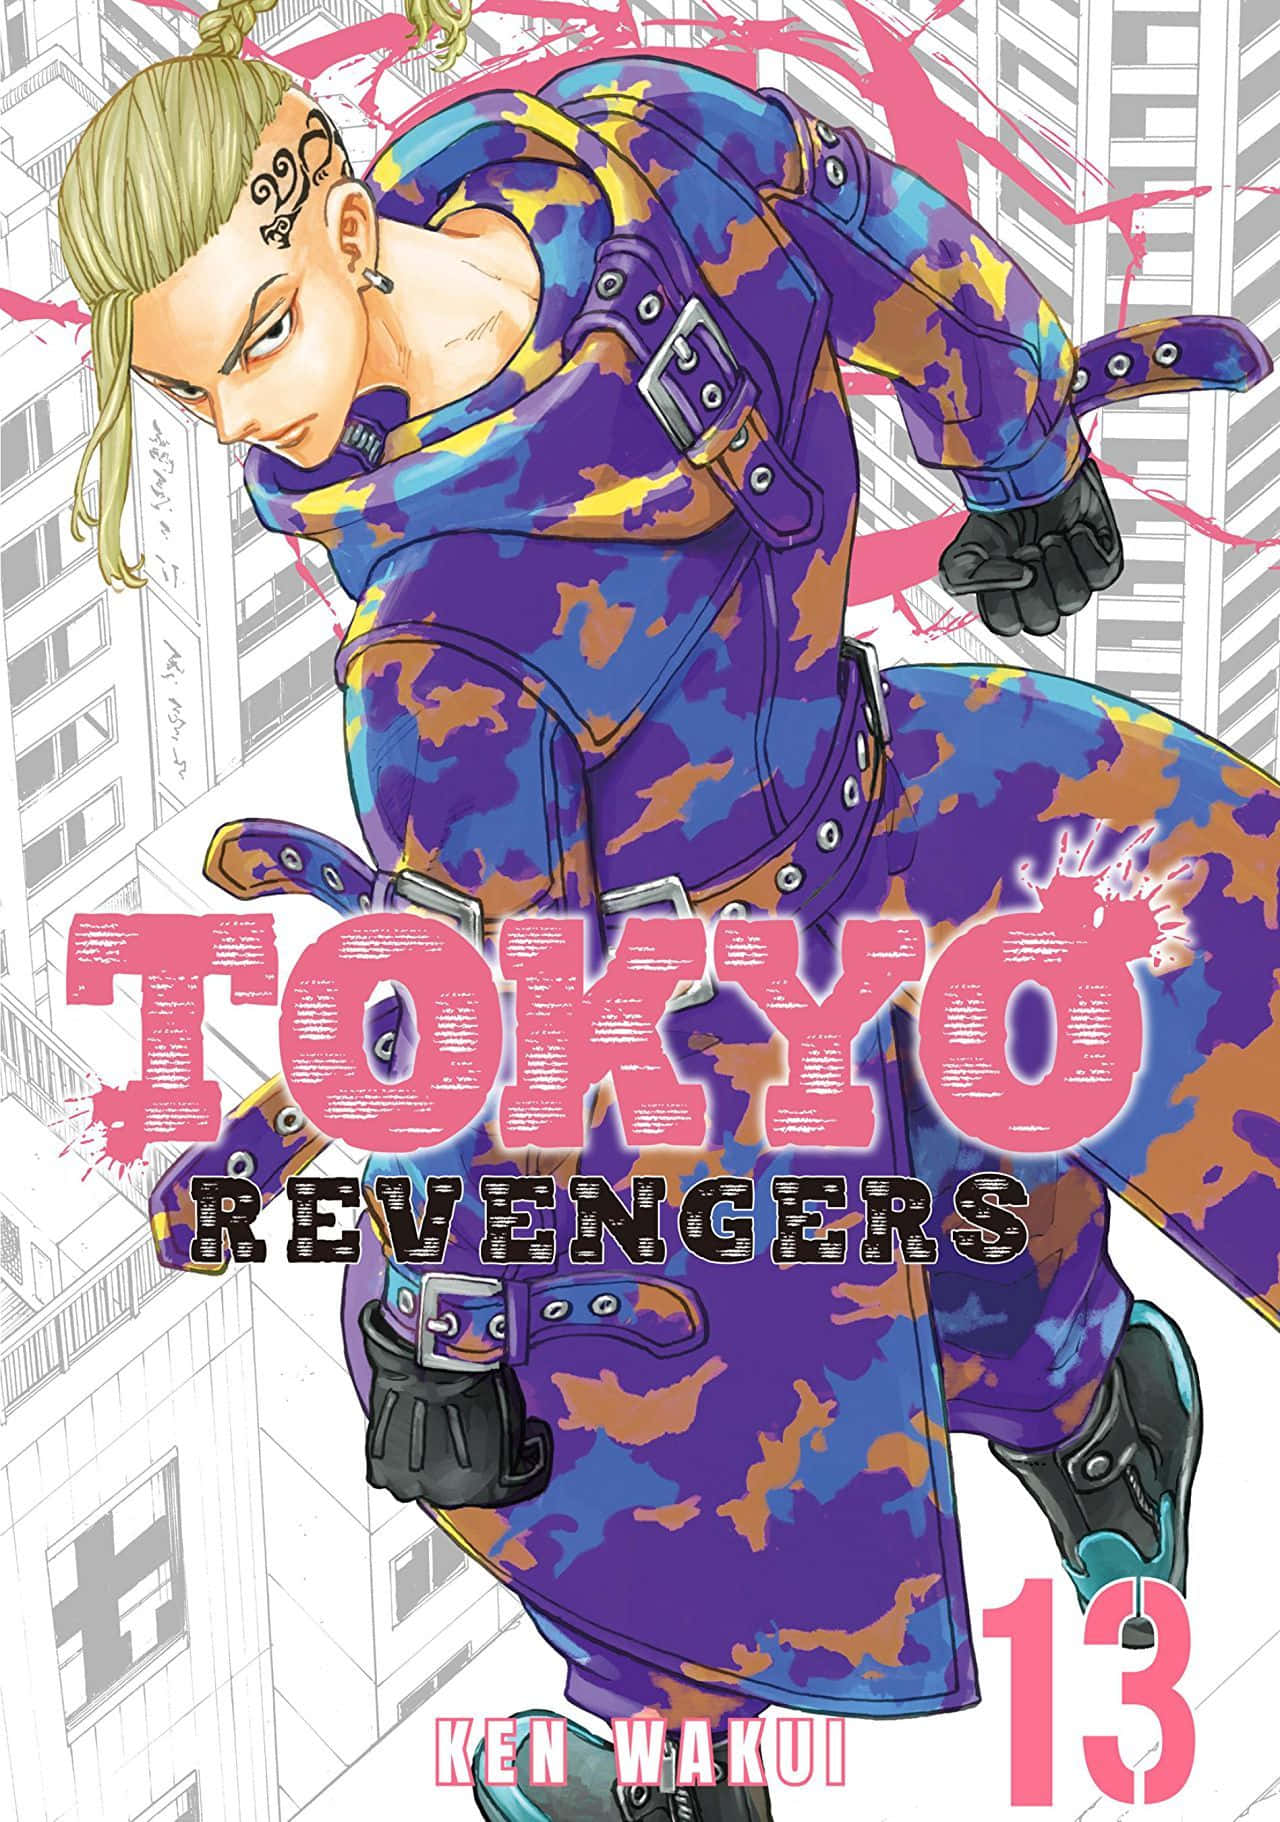 "The Tokyo Revengers Gang takes Revengence"